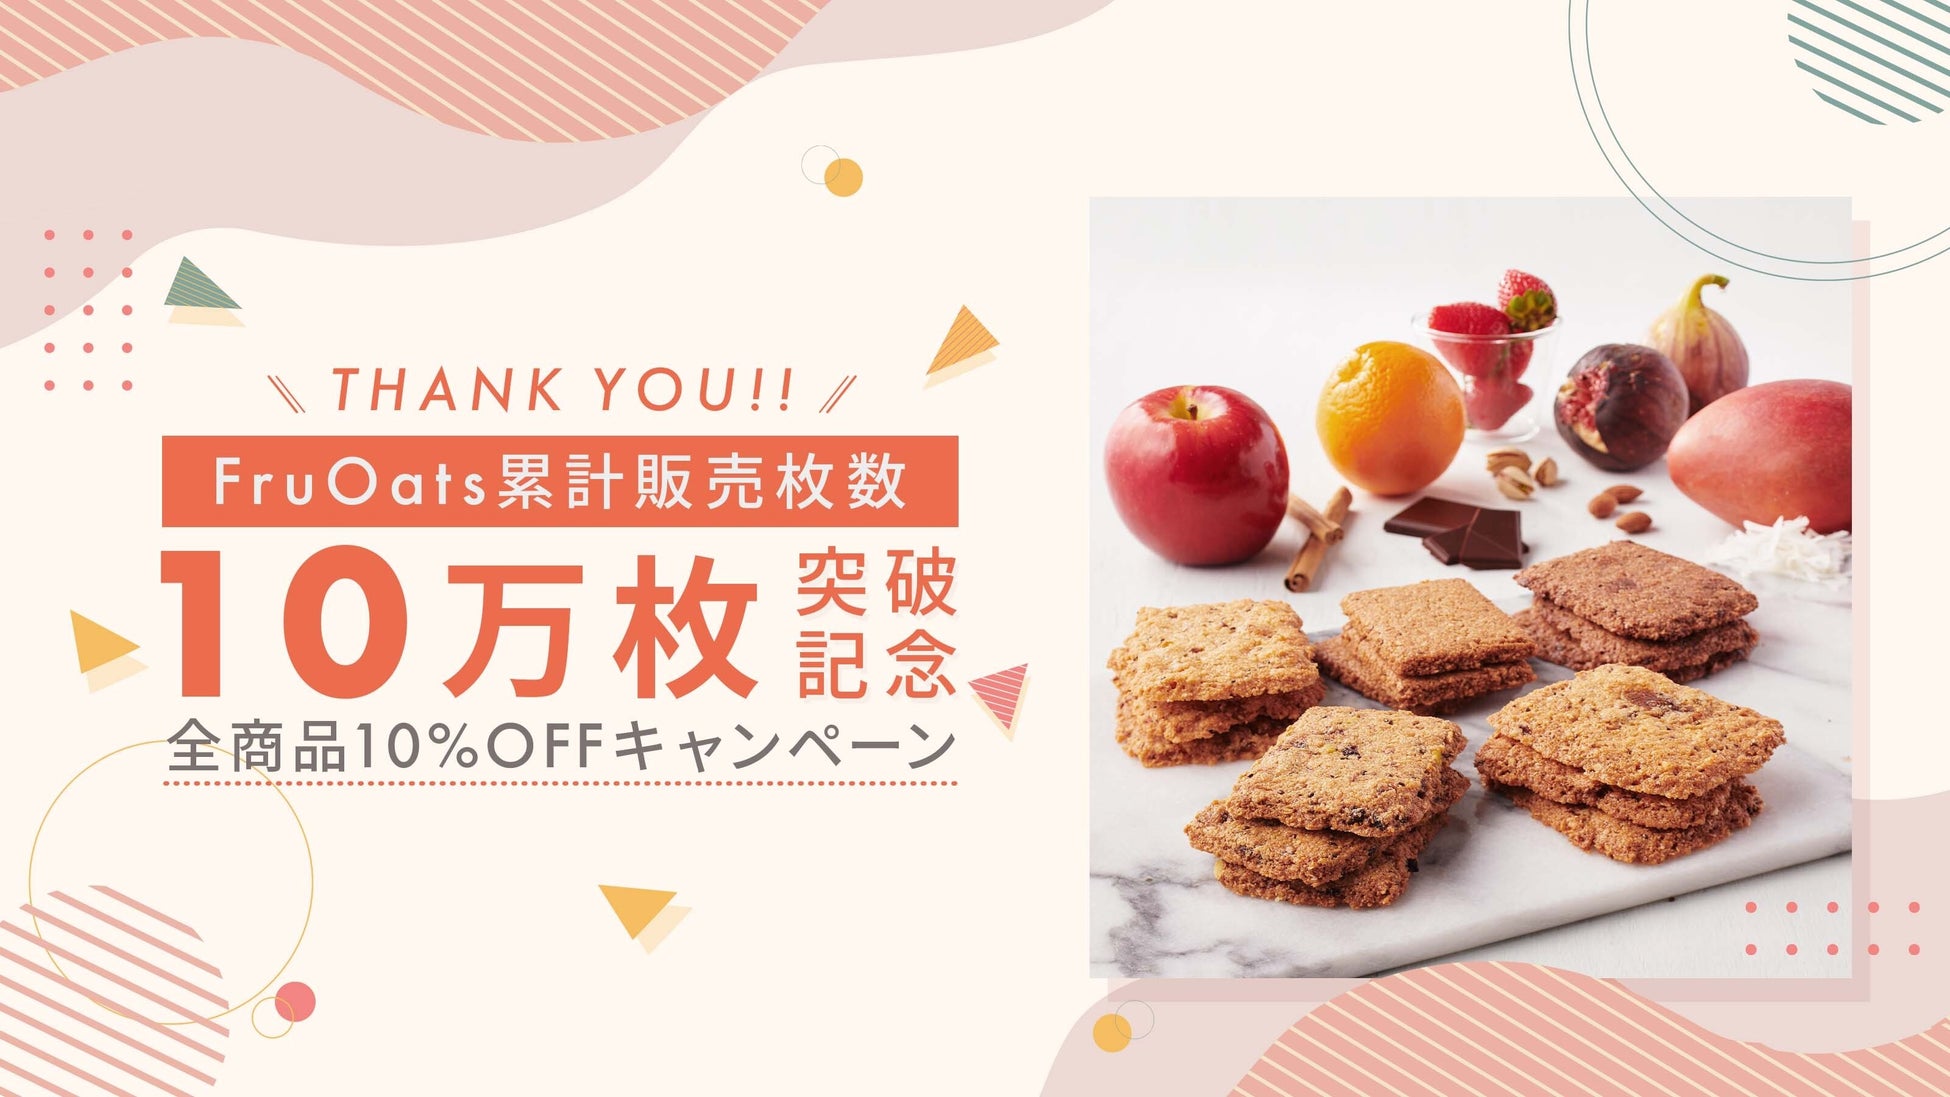 神戸のスイーツブランド「ファクトリーシン」　
見た目爽やか、食べてひんやりと涼しい
2022年の「お中元・夏ギフト」を販売開始